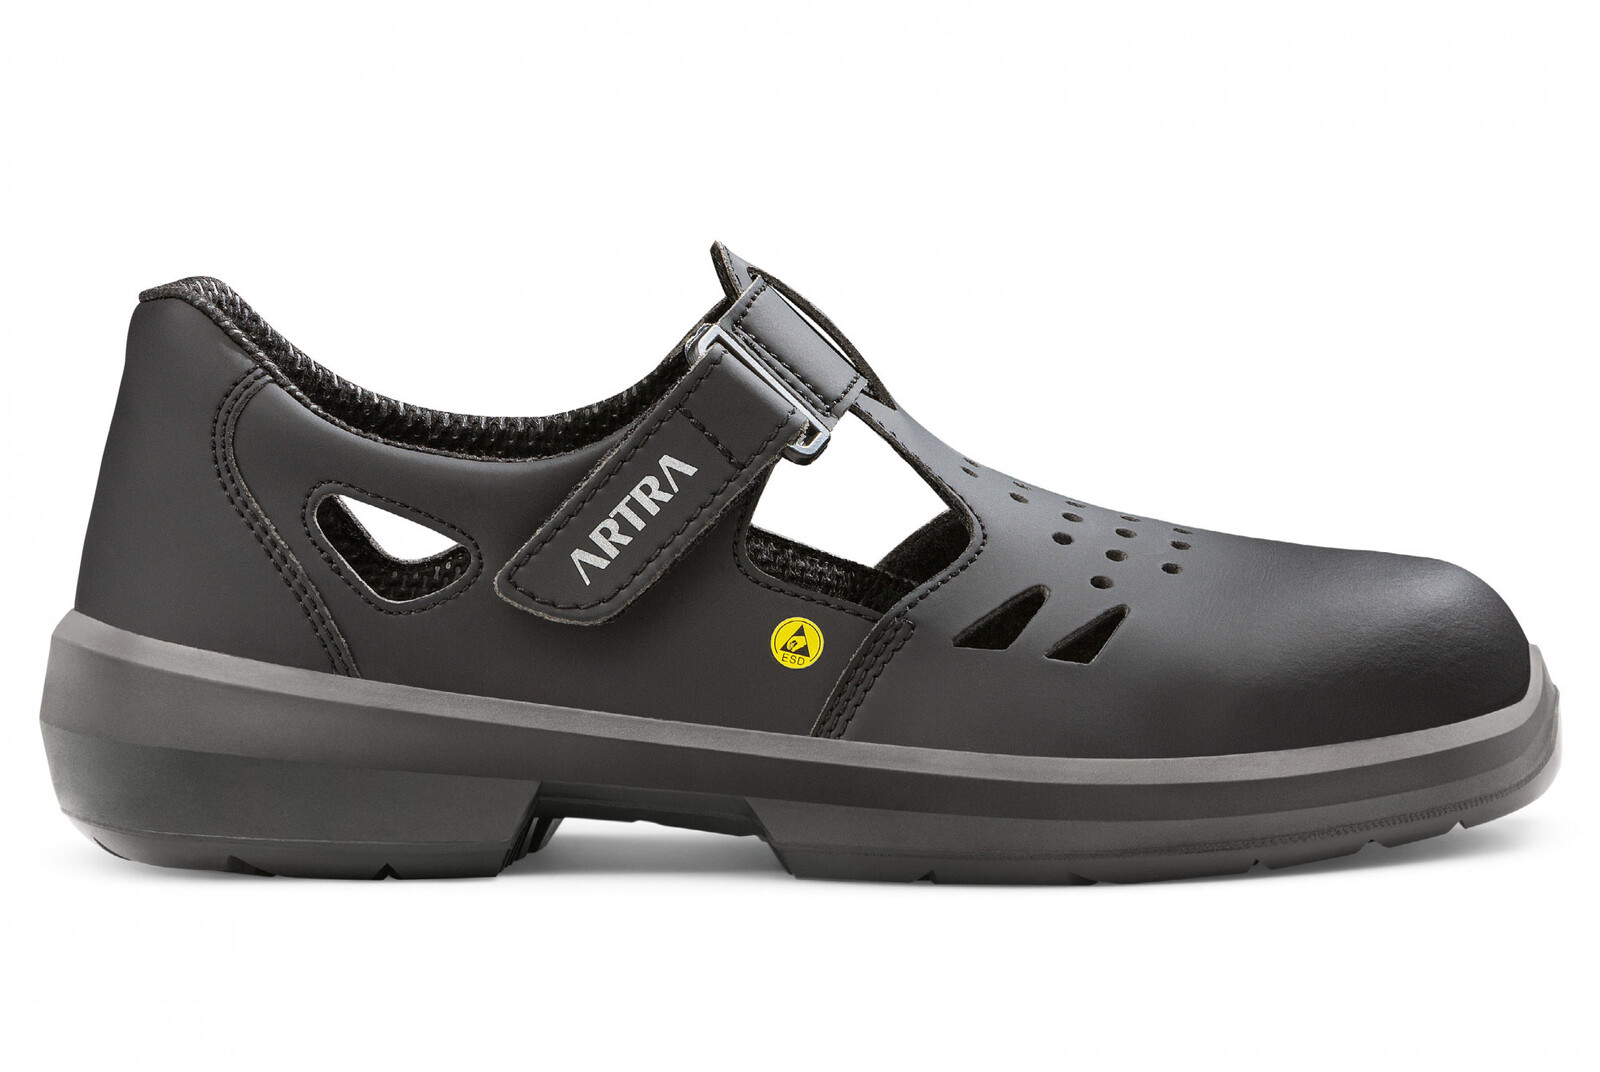 Bezpečnostné sandále Artra Armen 9008 6760 S1P SRC ESD MF - veľkosť: 46, farba: čierna